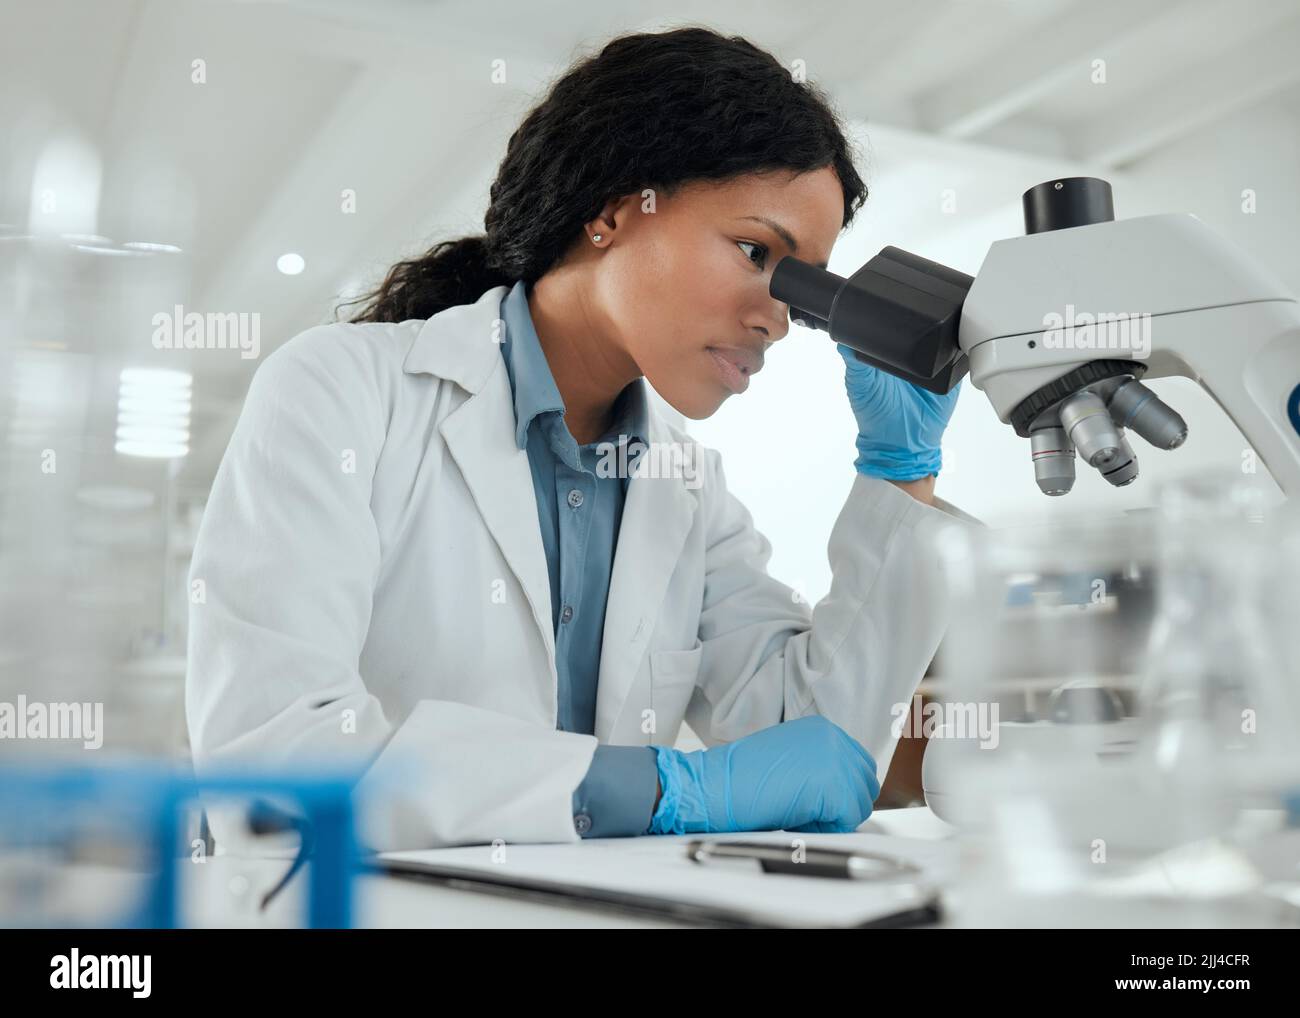 Lavorare senza distrazioni. Una giovane donna che usa un microscopio in un laboratorio scientifico. Foto Stock